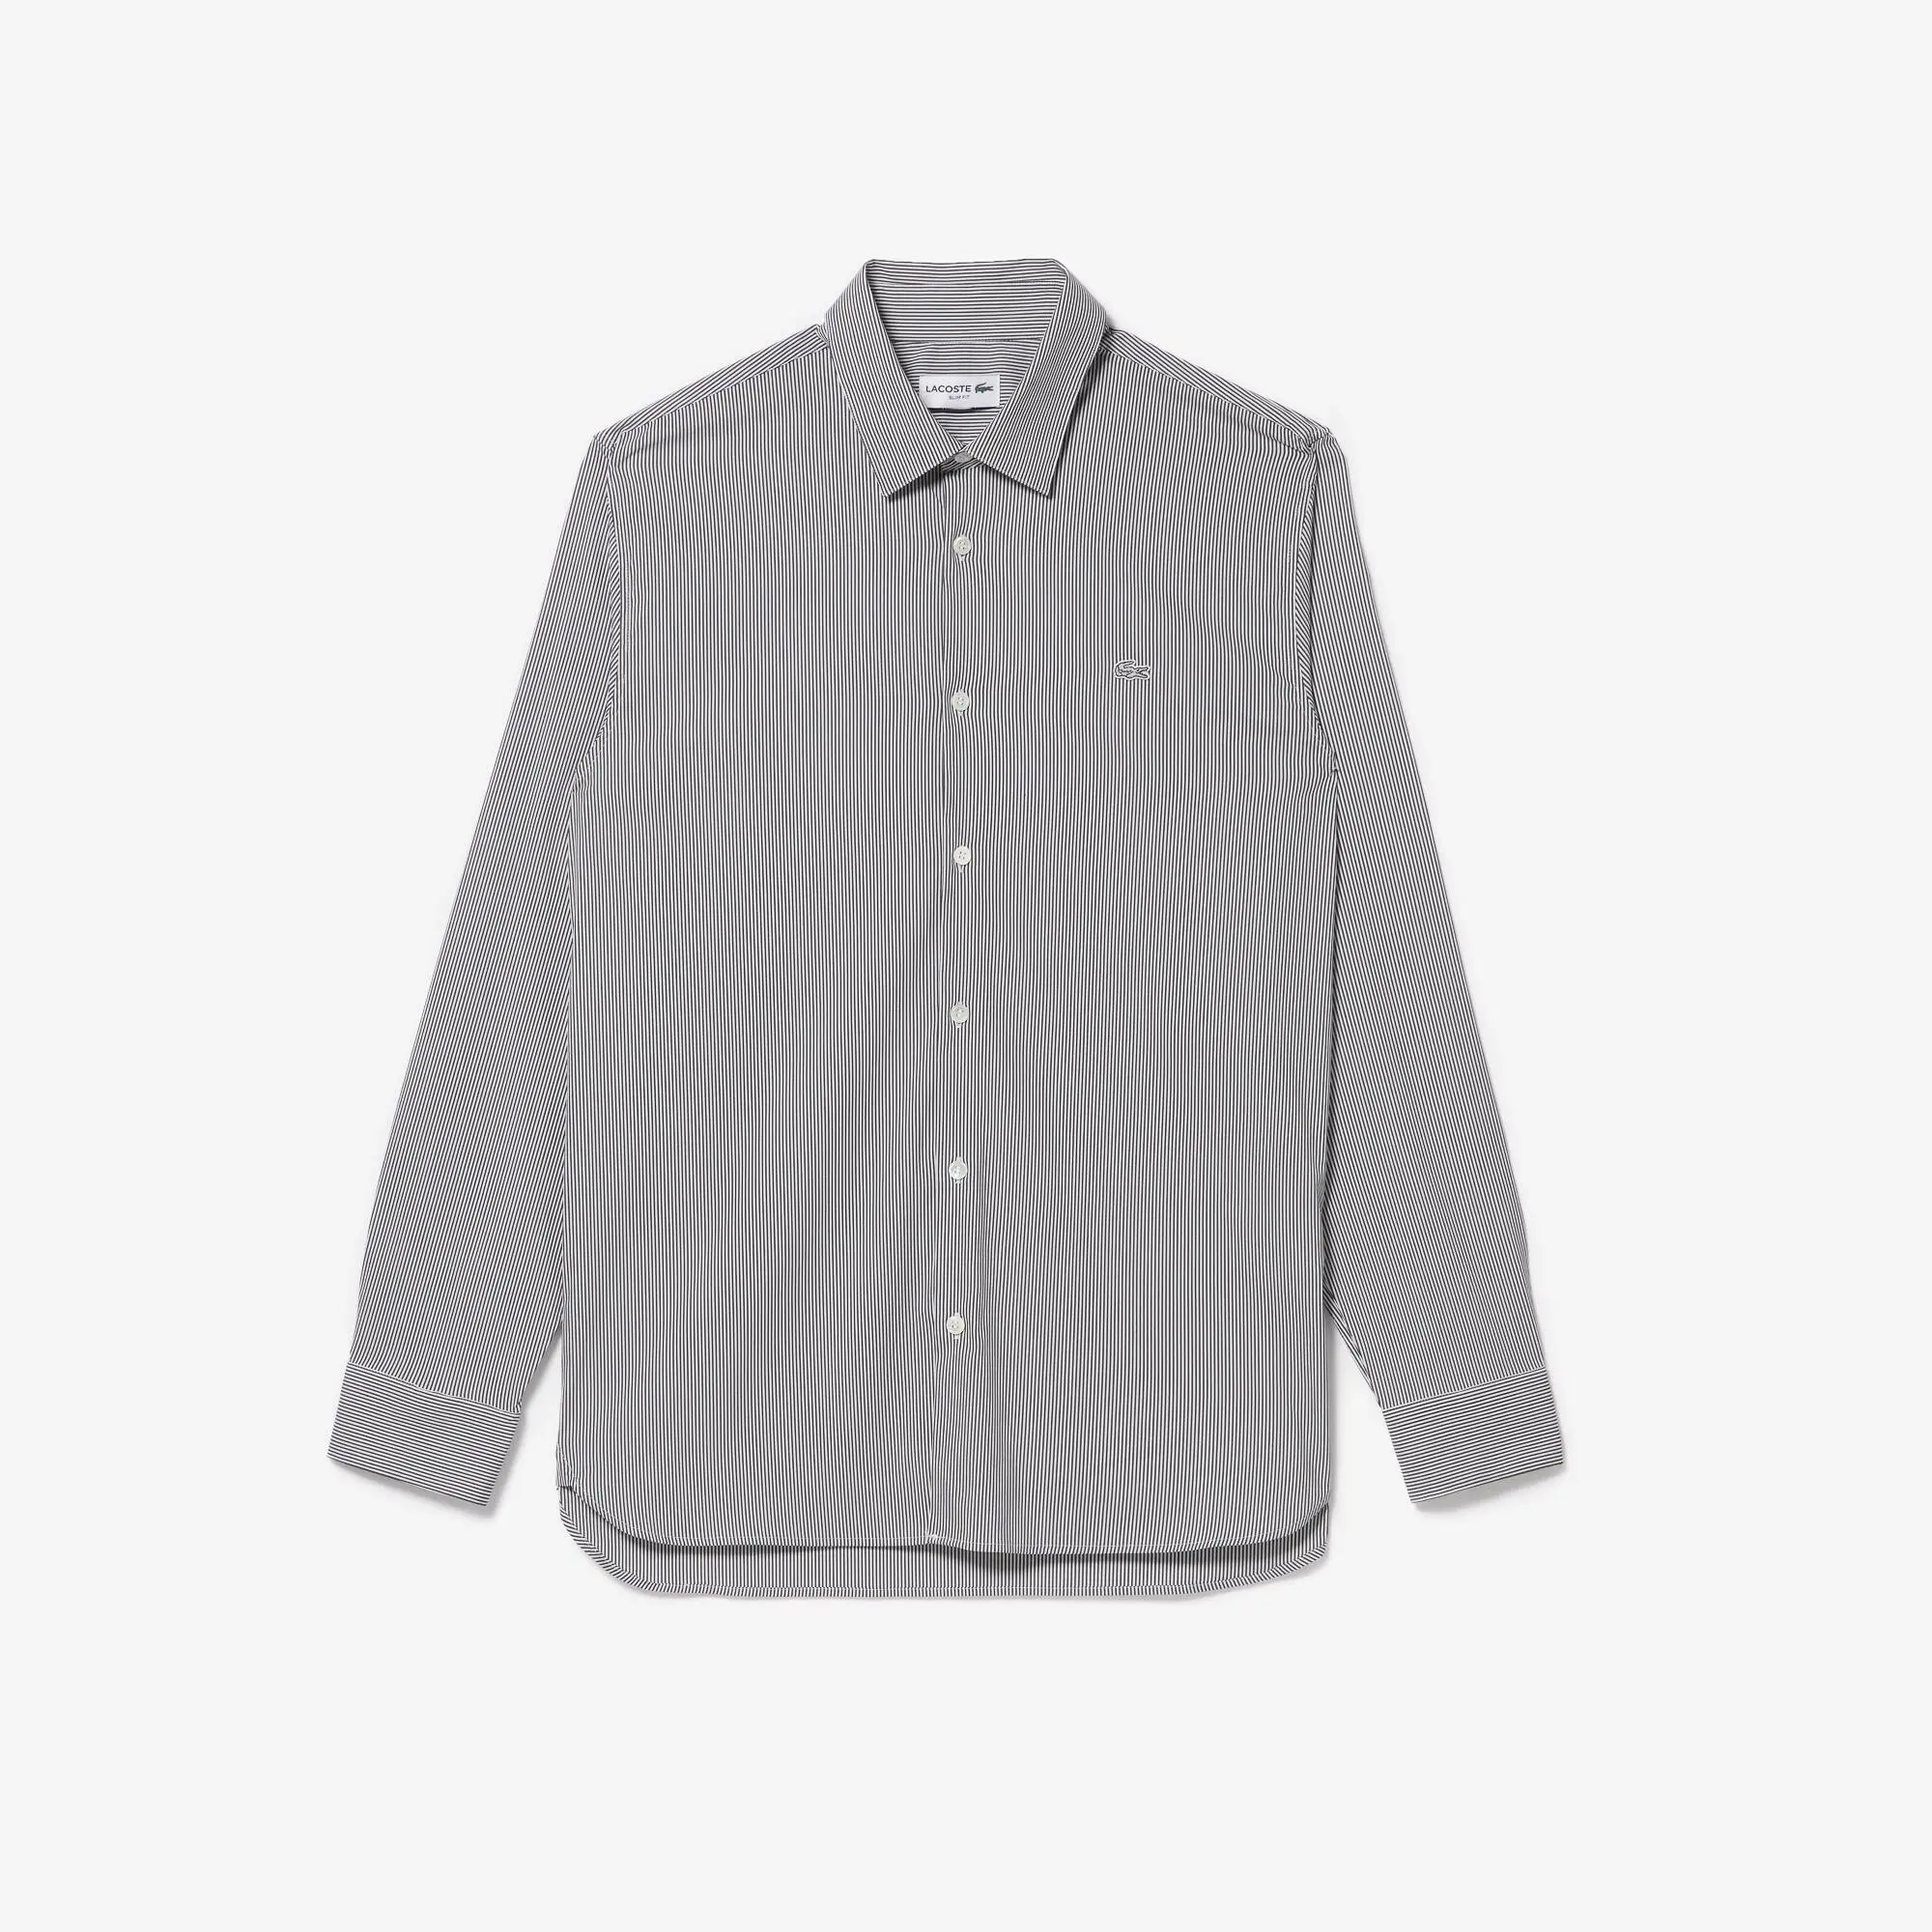 Lacoste Camisa de hombre Lacoste slim fit en popelín elástico de rayas. 2